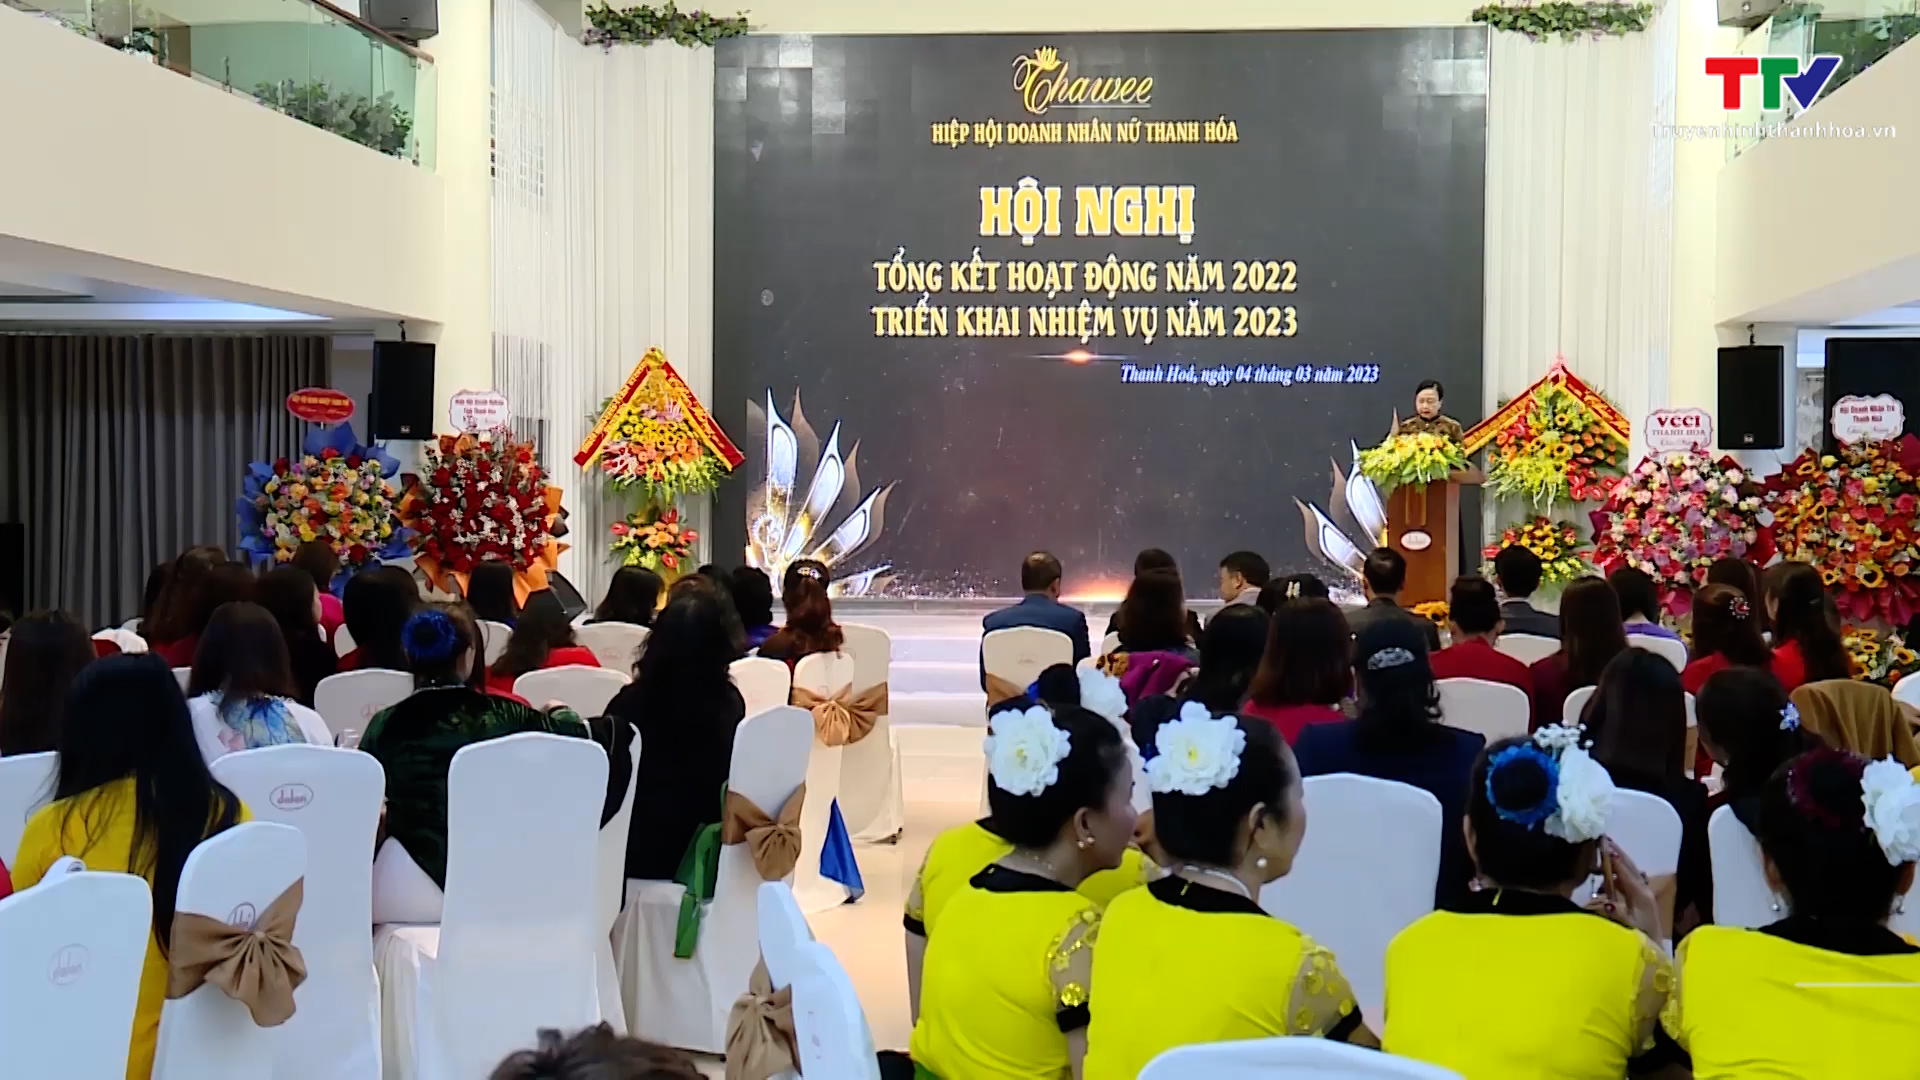 Hiệp hội Doanh nhân nữ Thanh Hoá triển khai nhiệm vụ năm 2023 - Ảnh 2.